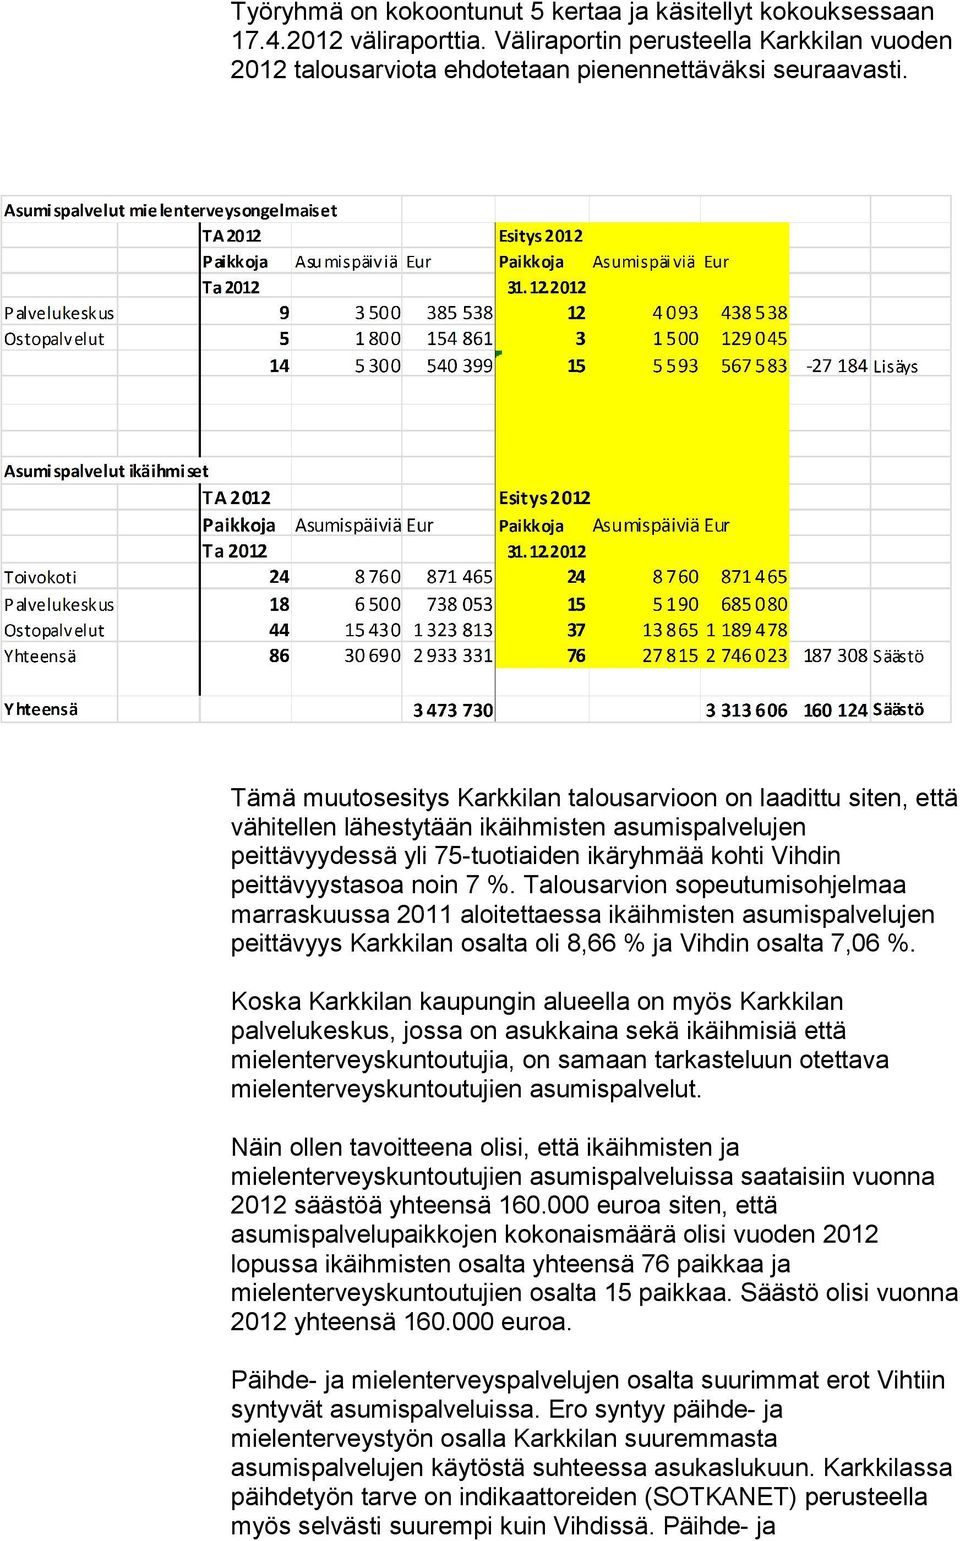 Talousarvion sopeutumisohjelmaa marraskuussa 2011 aloitettaessa ikäihmisten asumispalvelujen peittävyys Karkkilan osalta oli 8,66 % ja Vihdin osalta 7,06 %.